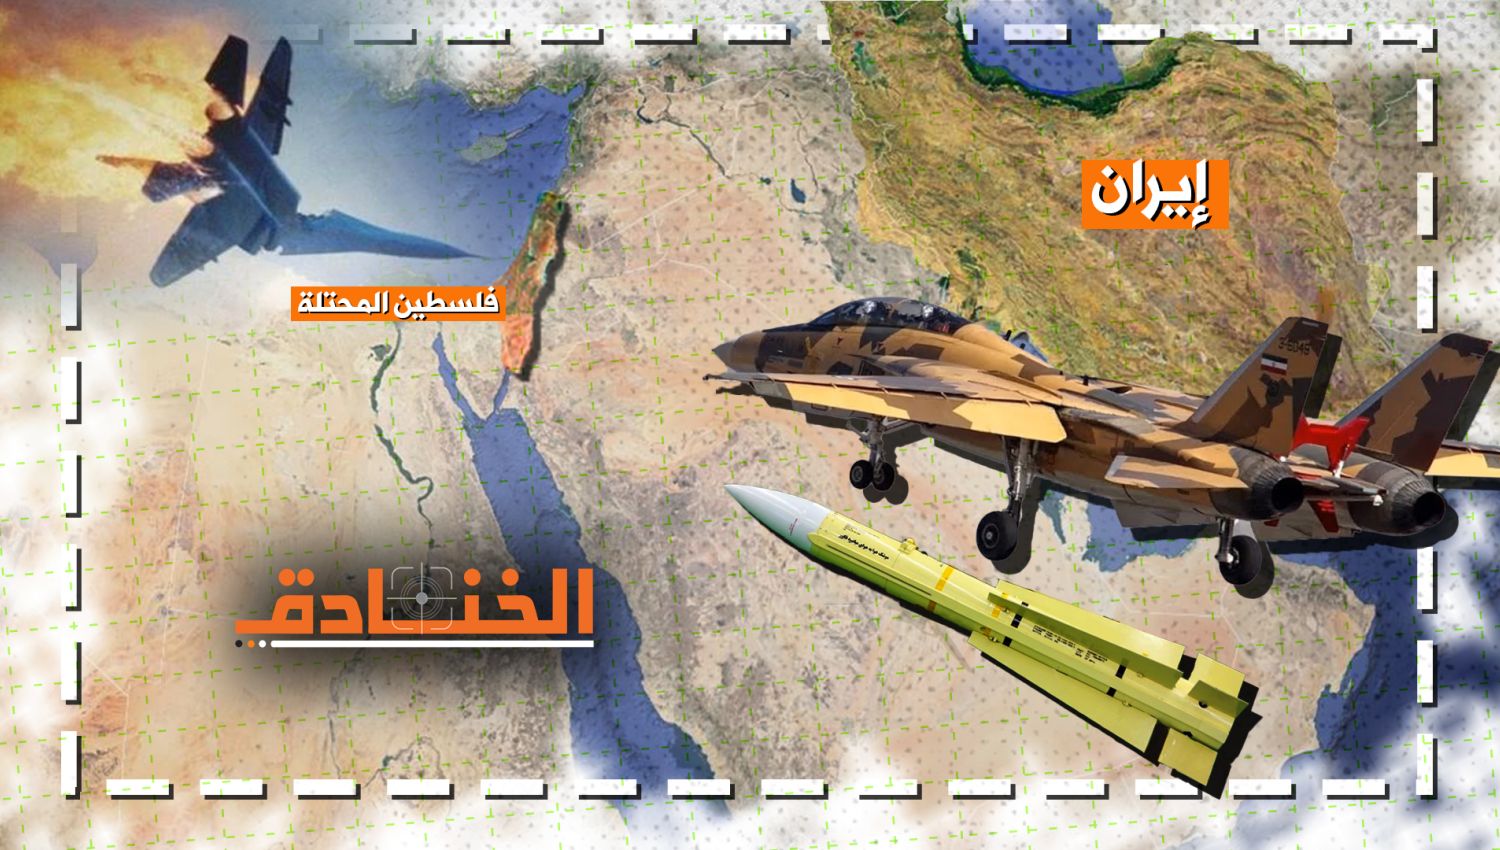 كيف تستطيع إيران تغيير معادلات الحرب الجوية؟